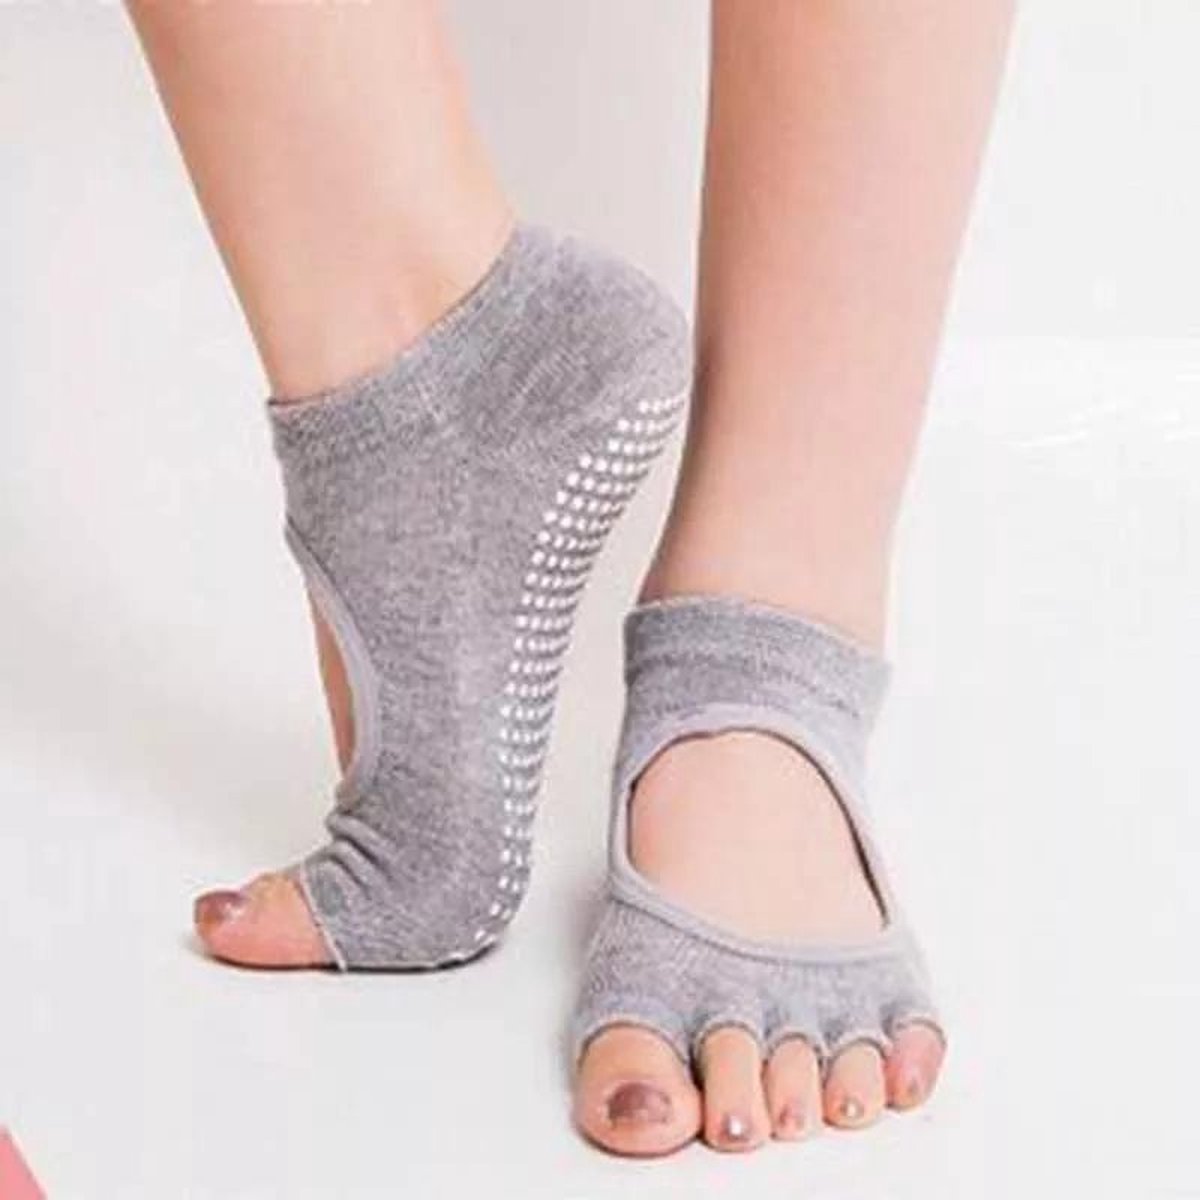 Yogasokken & Pilatessokken - Antislip sokken * 'Ballerina' - grijs - meerdere kleuren verkrijgbaar - Pilateswinkel * Yoga sokken * Pilates sokken